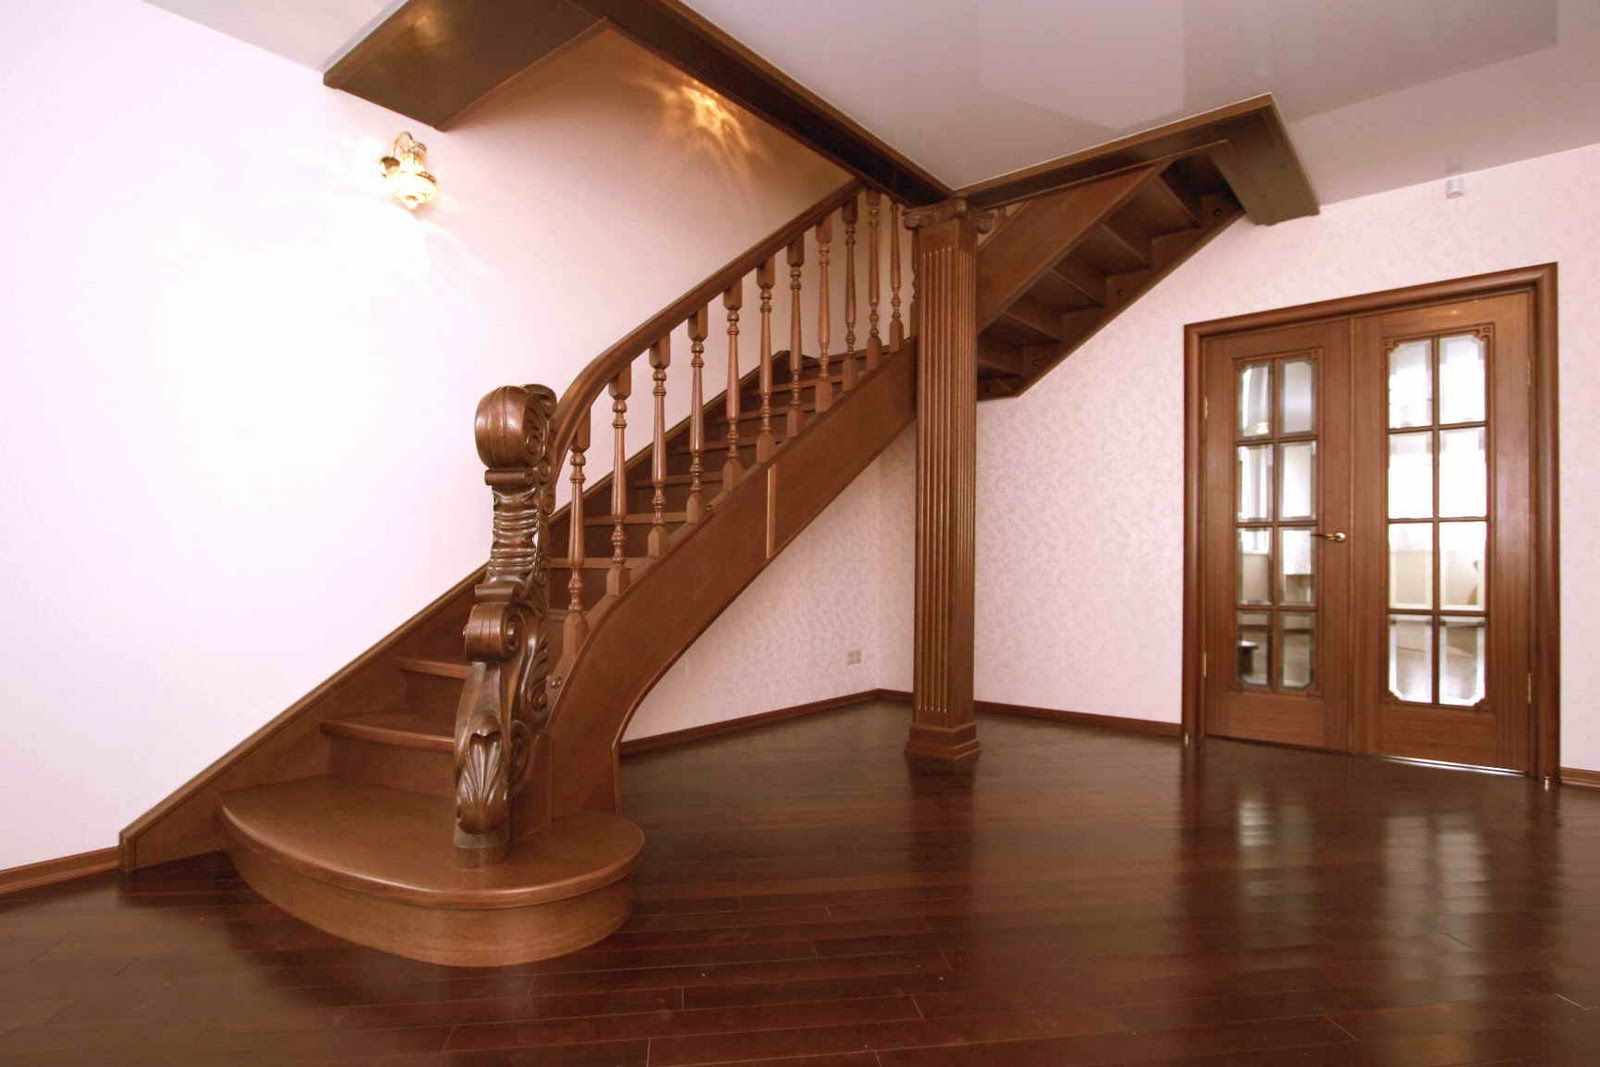 Příklad designu světlého schodiště